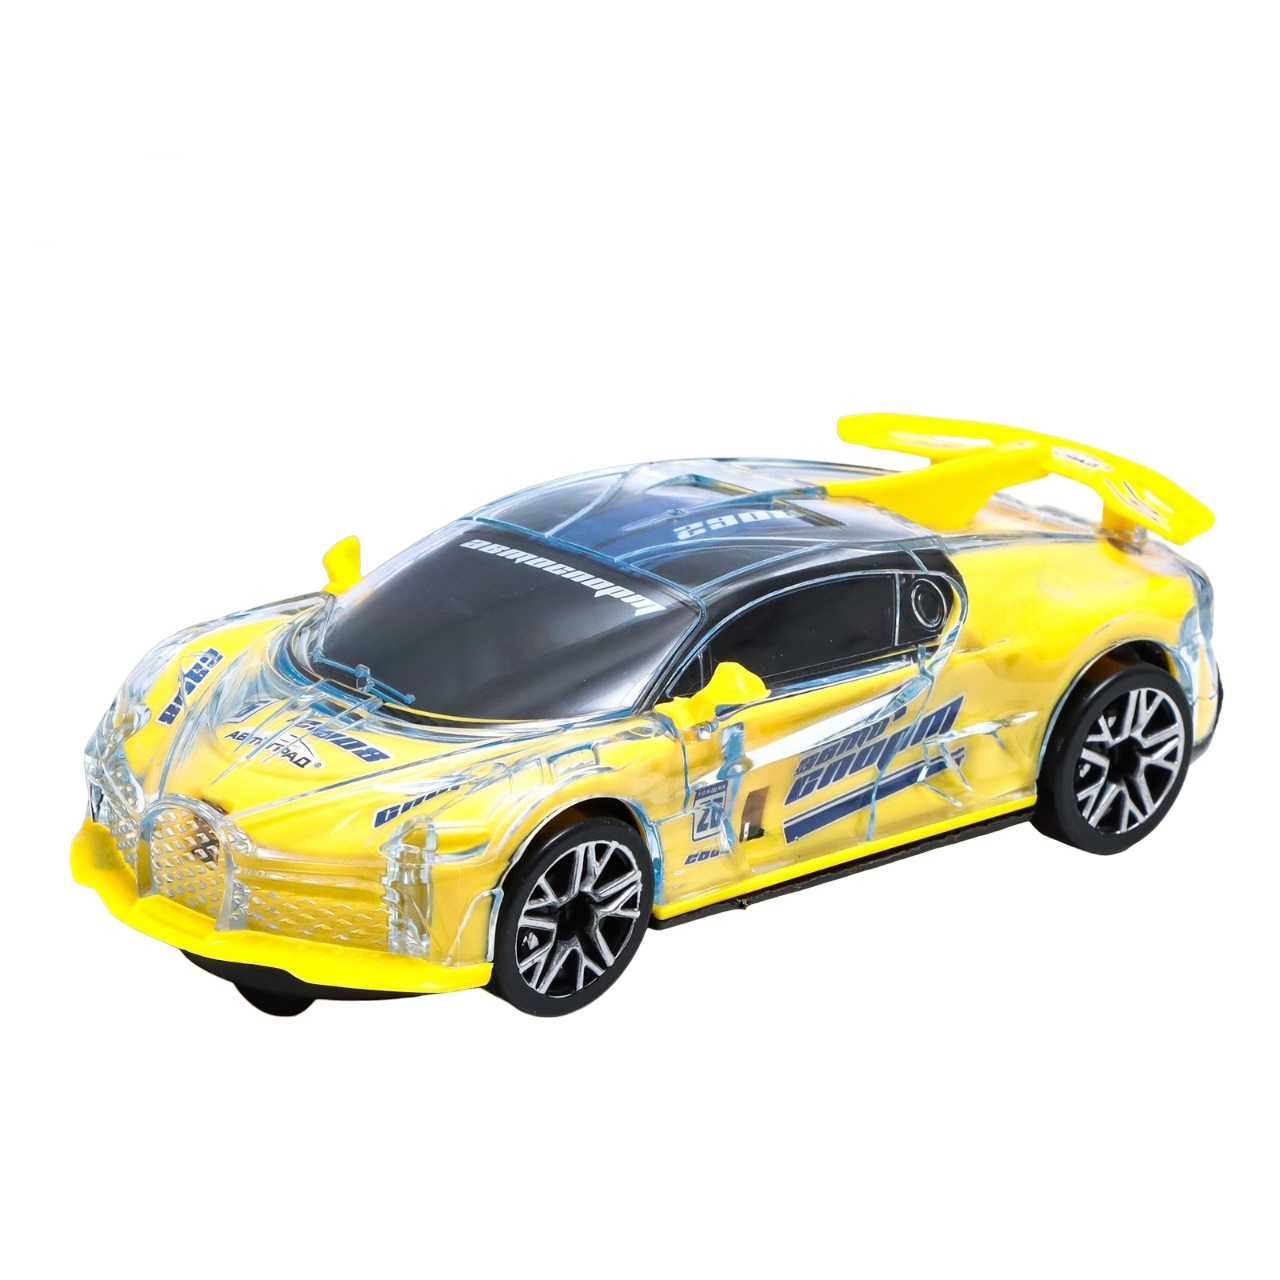 Машина гоночная Автоград Crazy race инерционная желтый 866-2 обмотка руля bbb race ribbon желтый bht 01